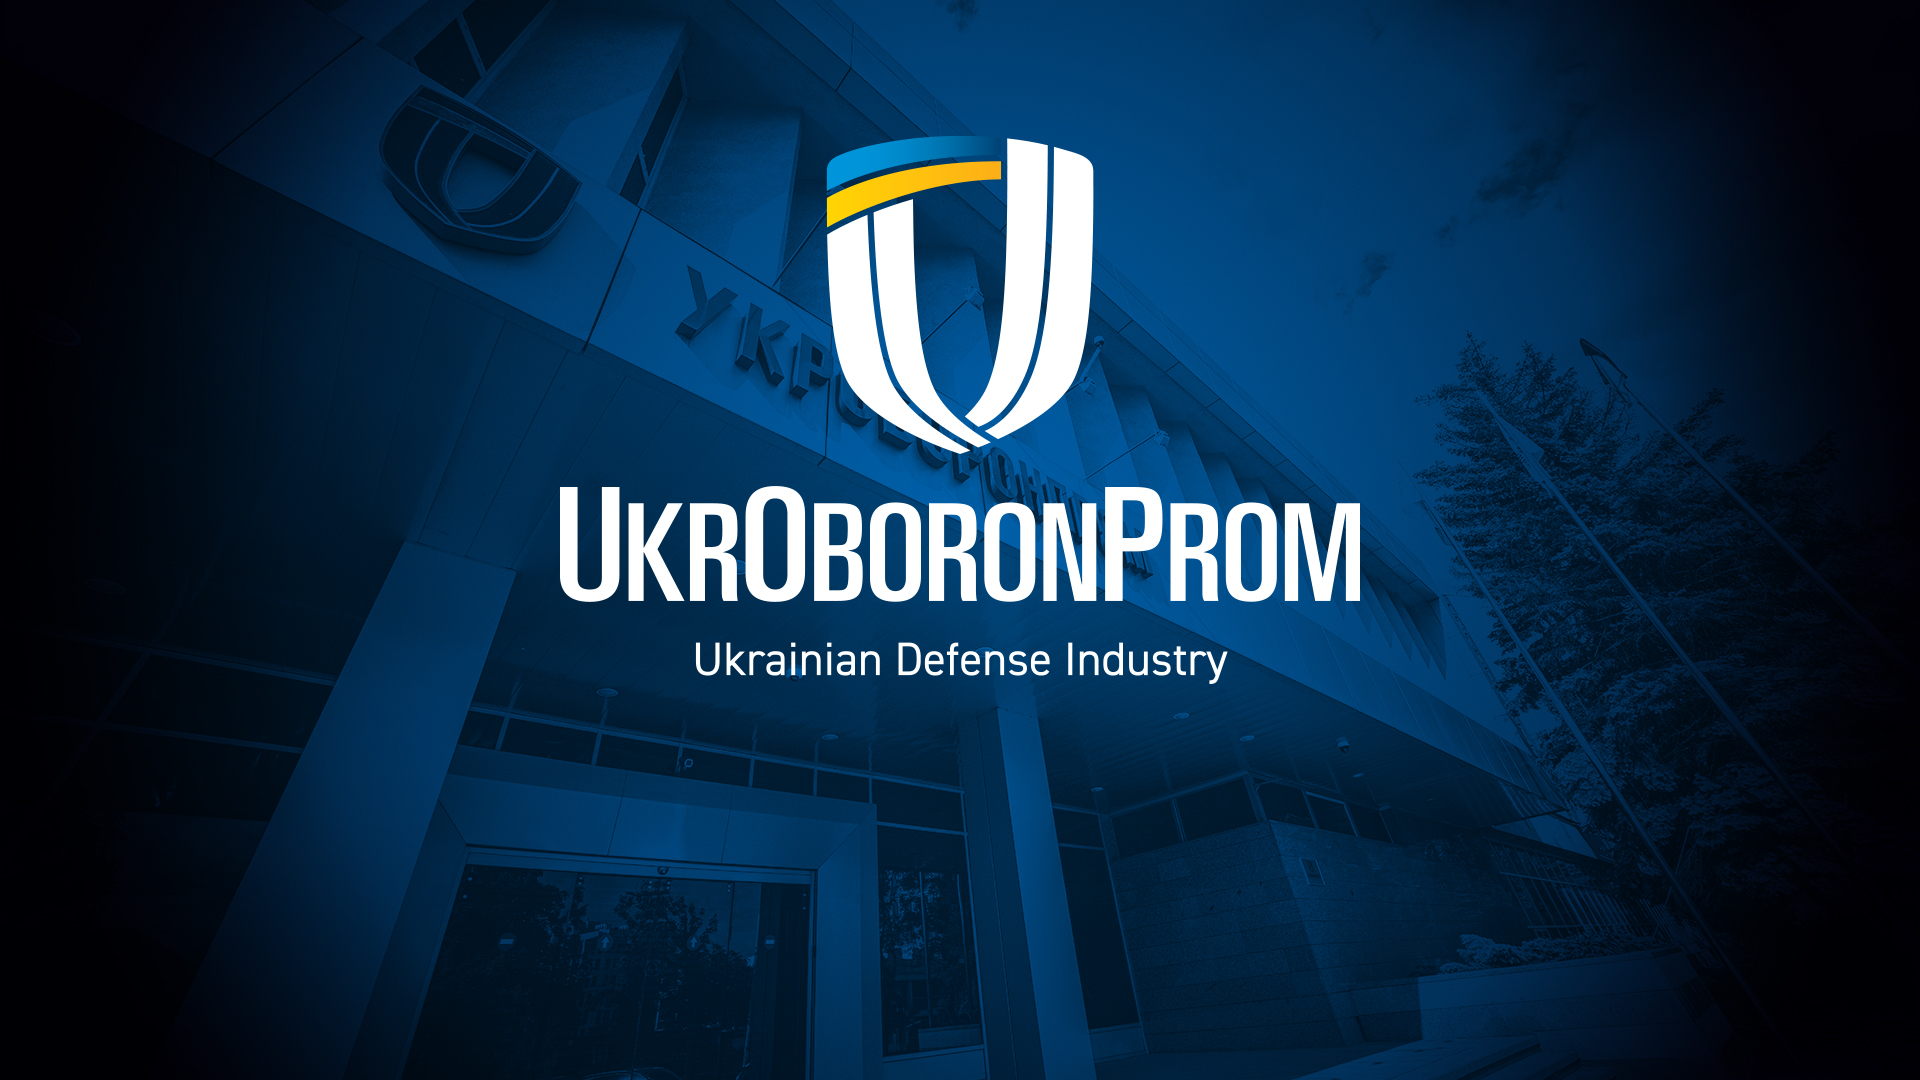 Ukrainian Defense Industry JSC to Assemble NATO Standard Firearms Under a License Agreement with Česká zbrojovka